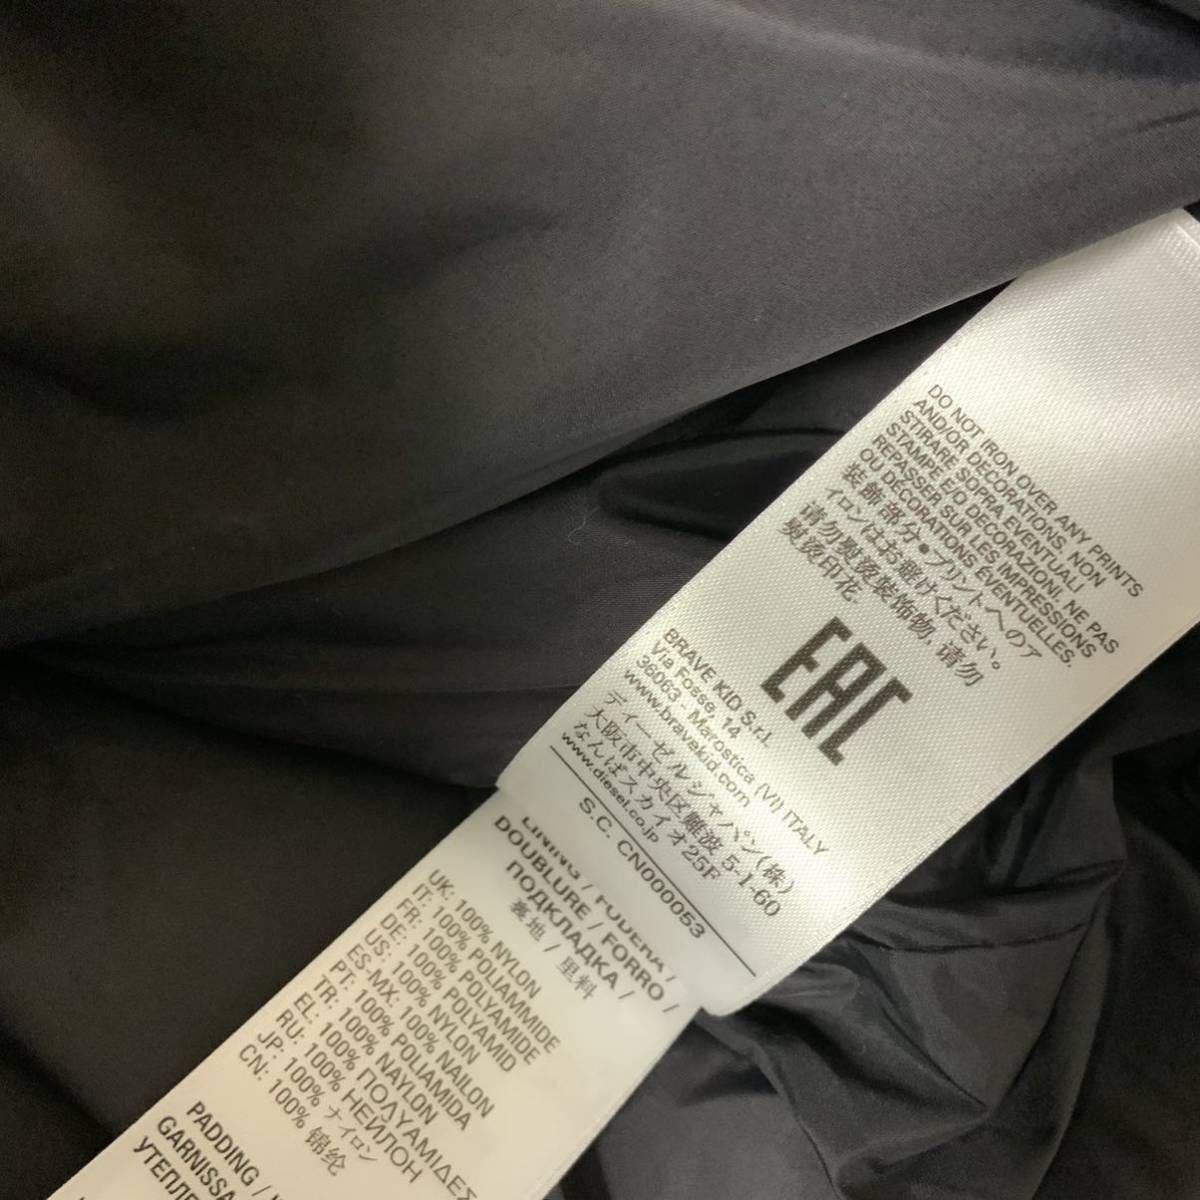  отполированный  дизайн 　DIESEL KID　Jrolf　... пиджак 　 пальто 　14Y　160cm　J00825 0BFAQ　 подлинный товар  　　#KIDSMAKO